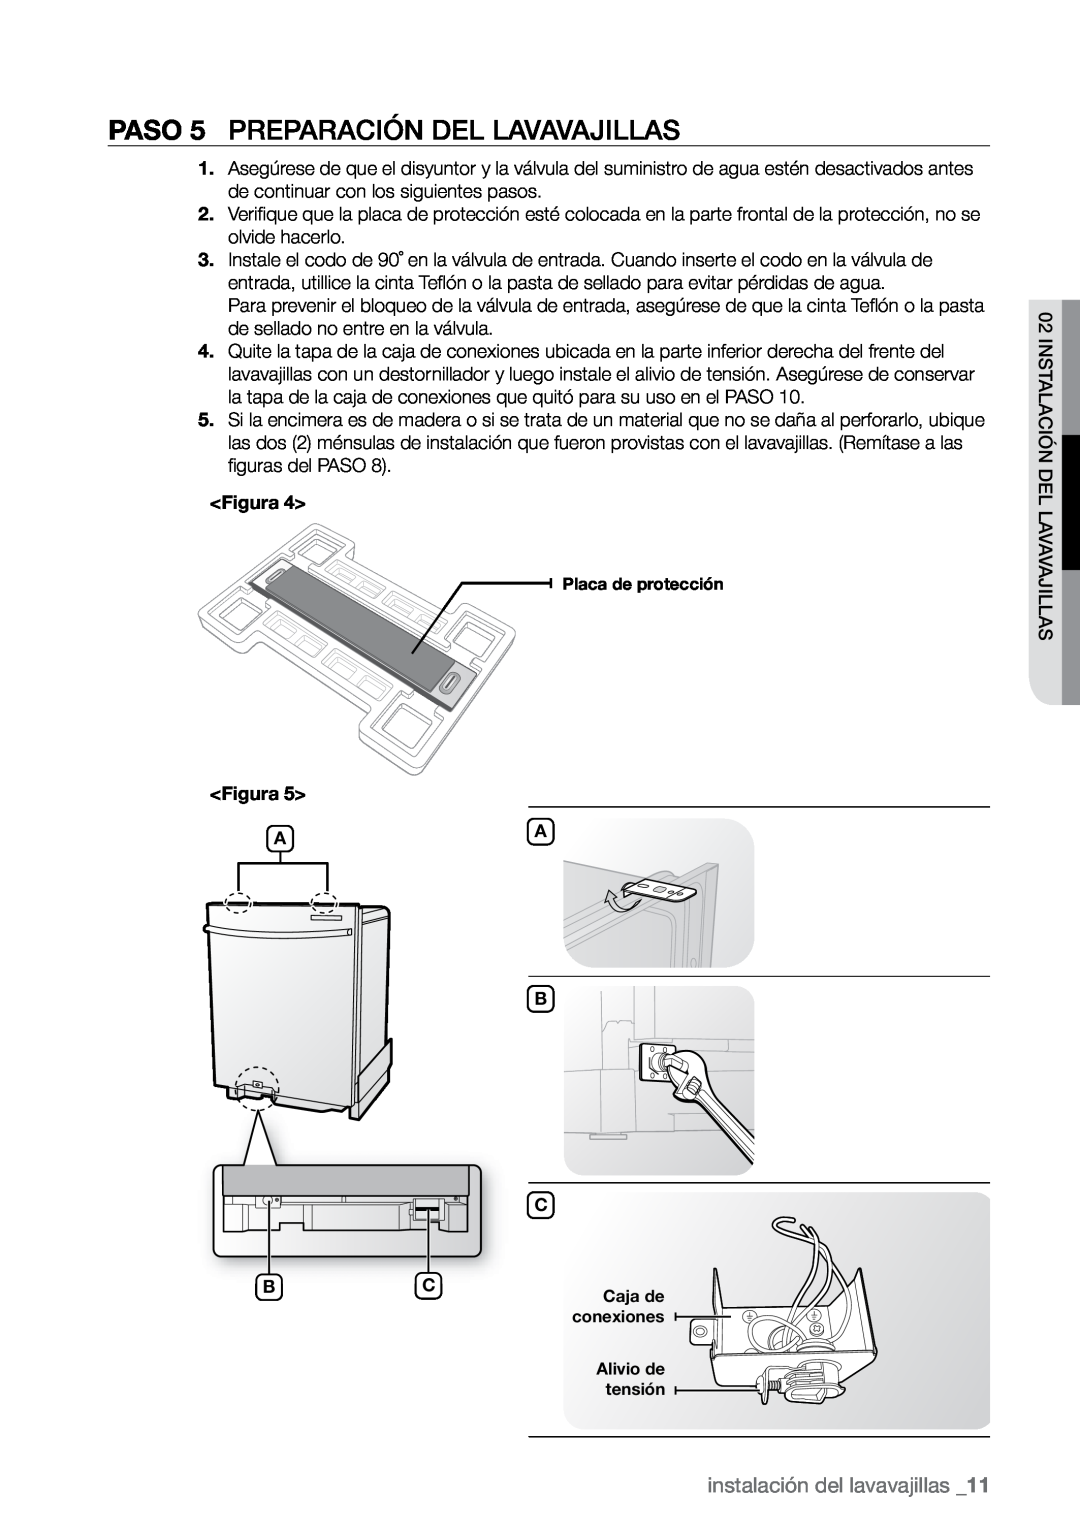 Samsung DMR77, DMR78, DMR57 manual PASO 5 Preparación del lavavajillas, instalación del lavavajillas 